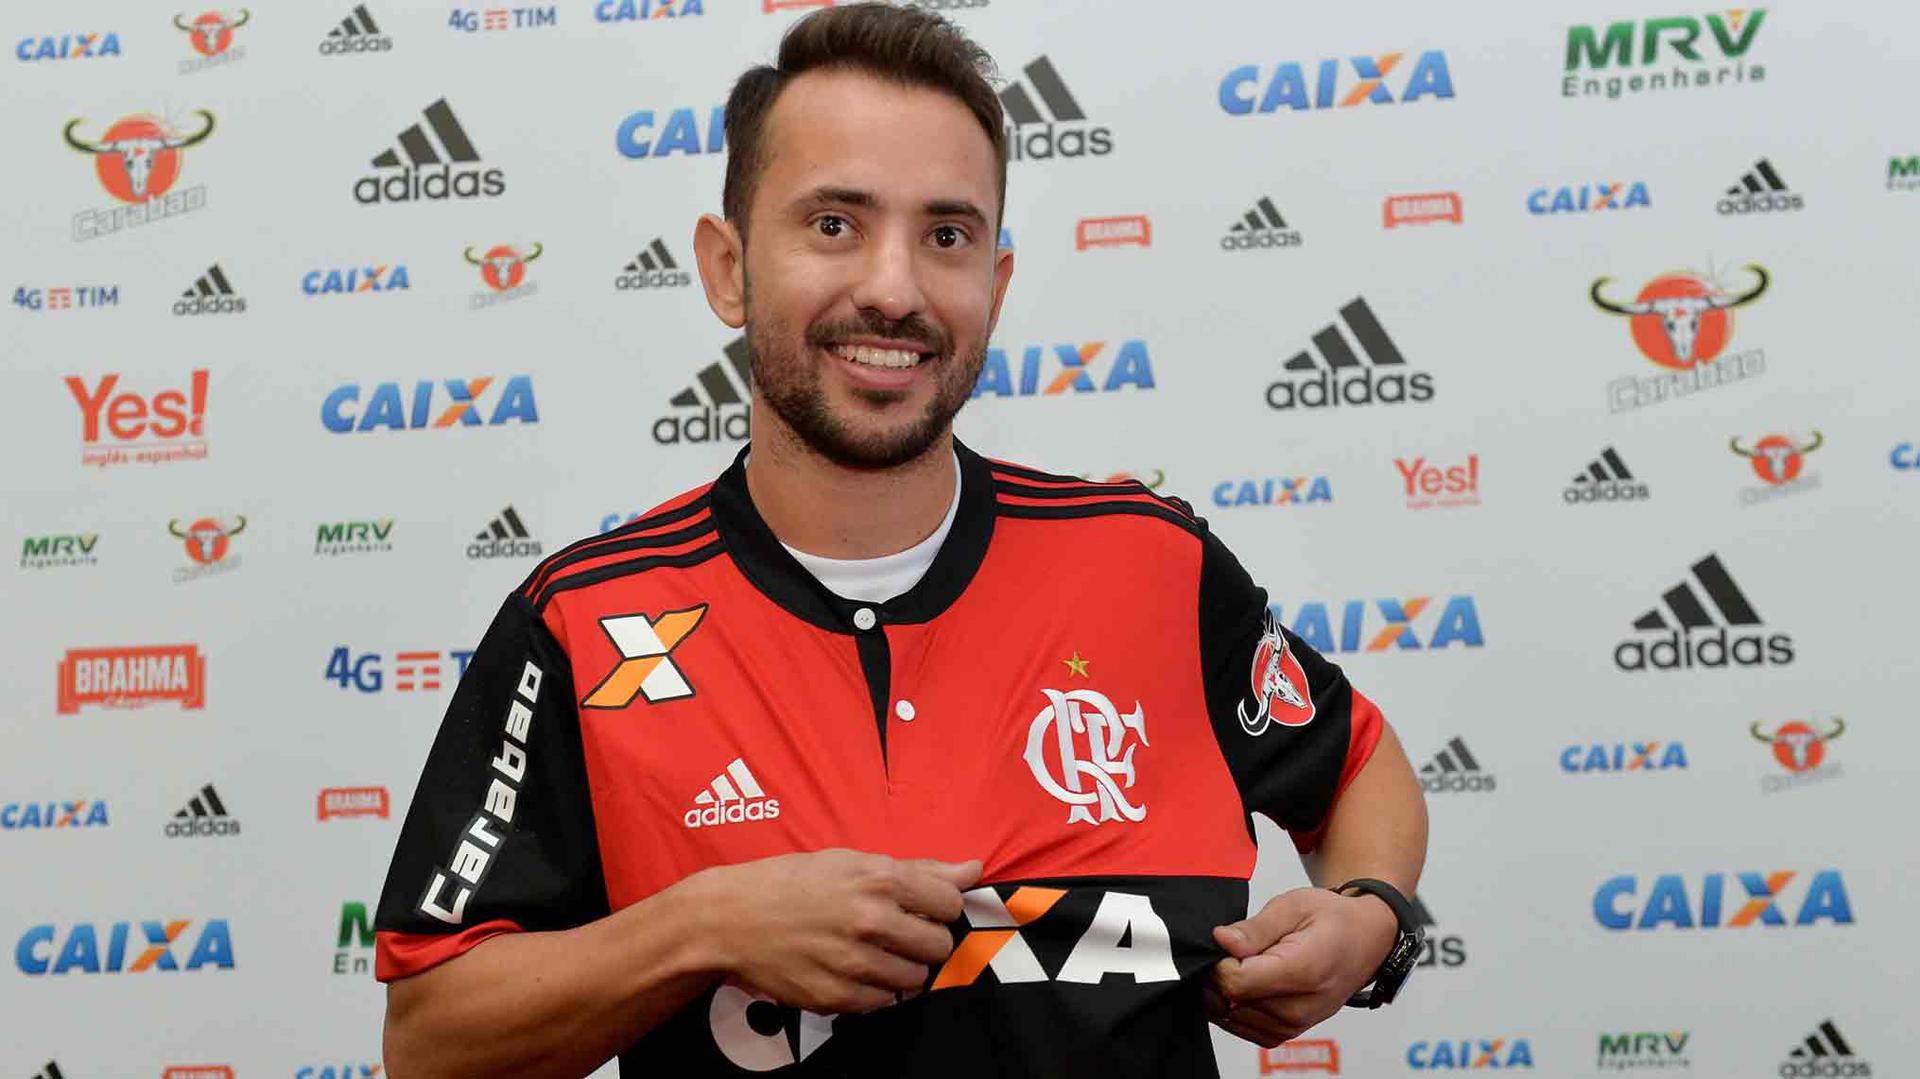 Depois de muita novela, o Flamengo anunciou a contratação de Everton Ribeiro. O Jogador já foi apresentado no clube